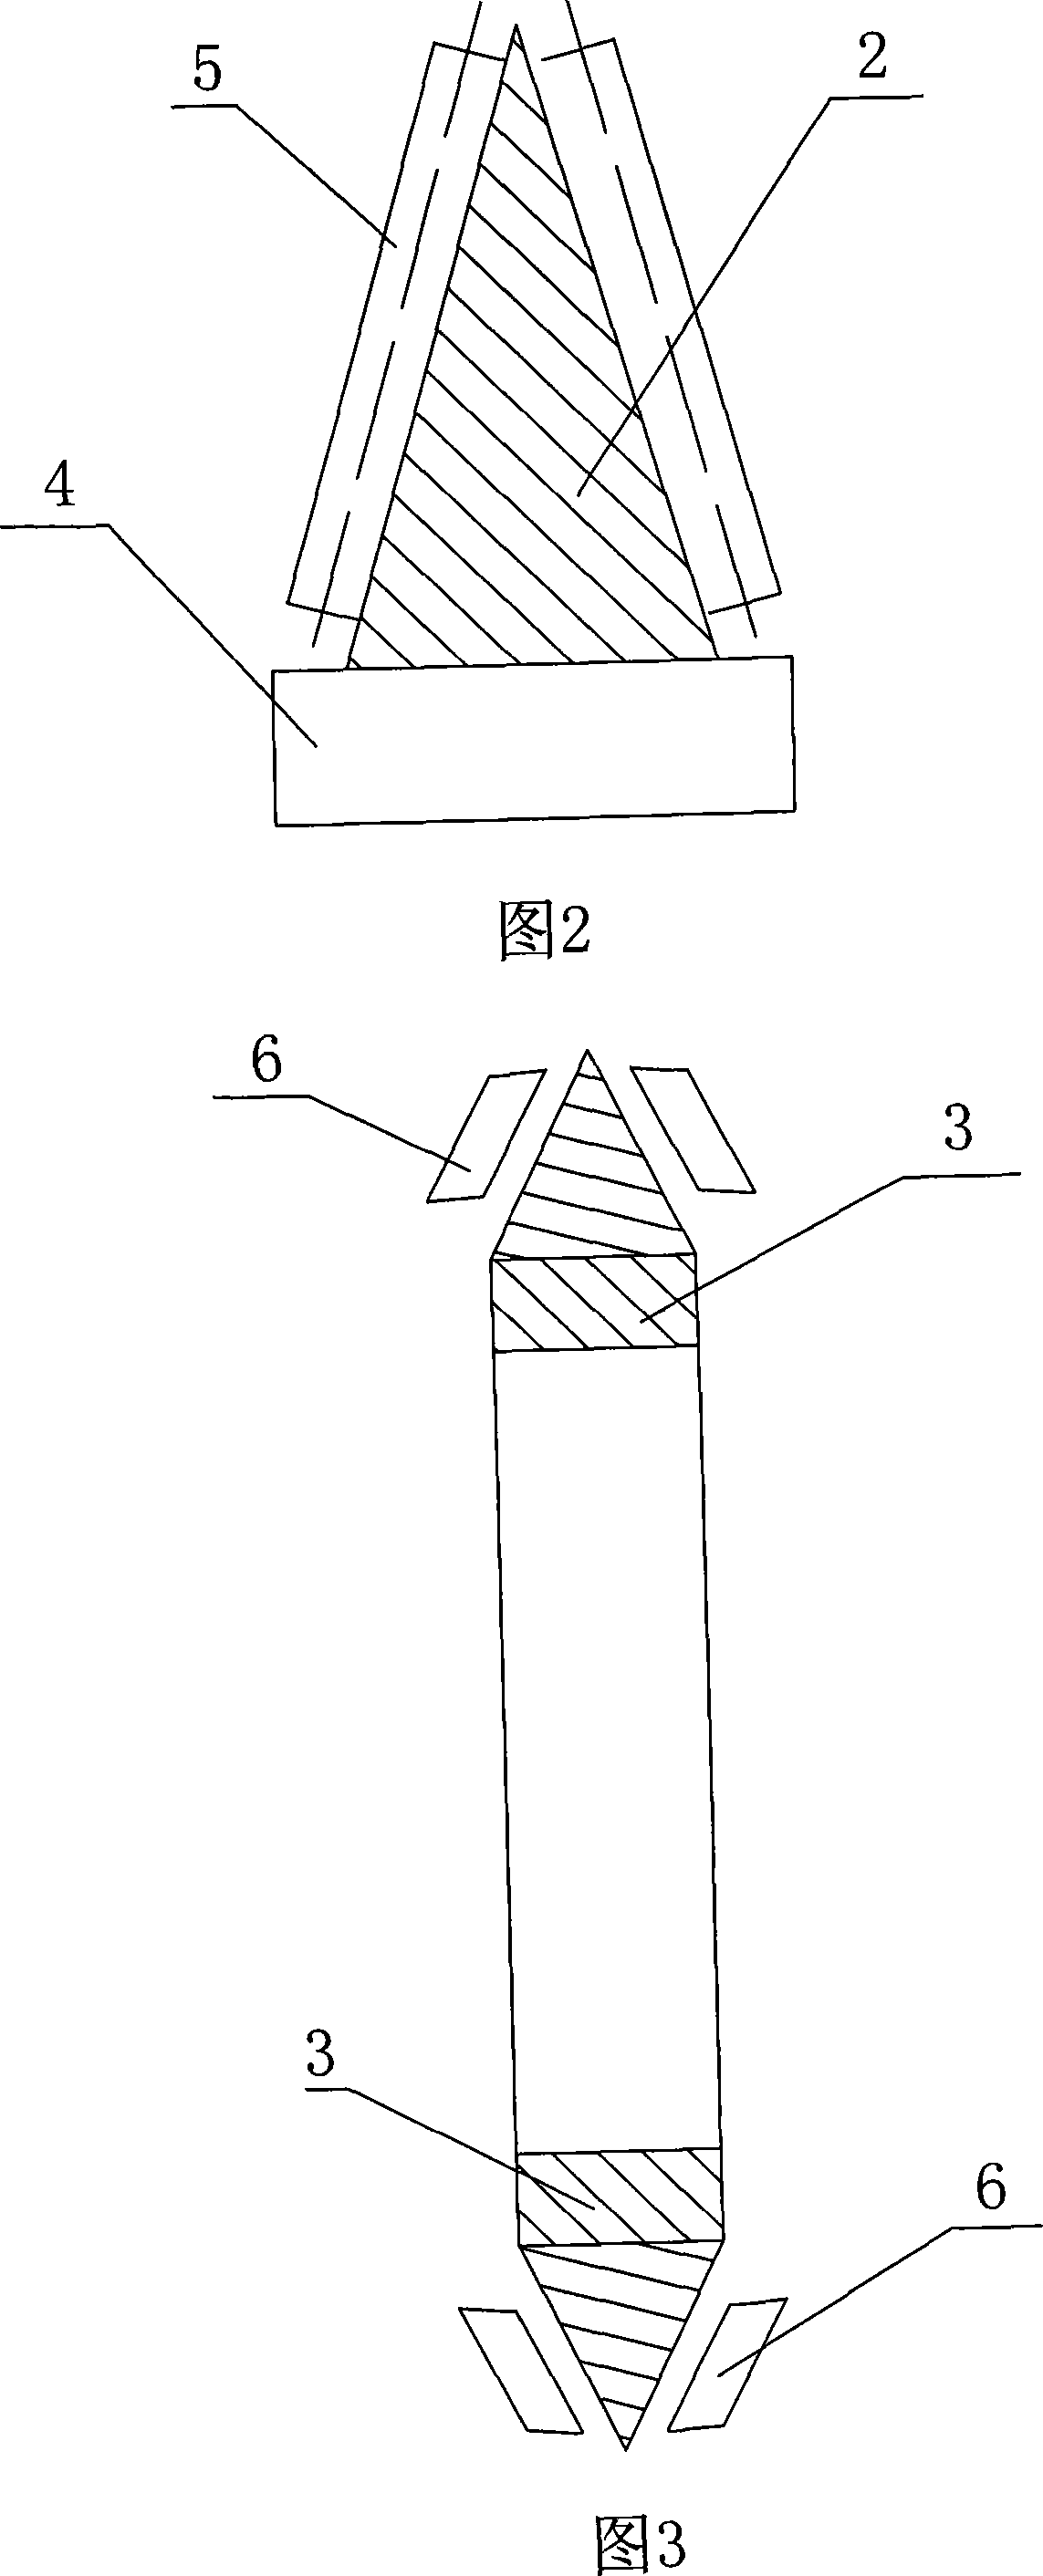 Triangular glue adhering machine